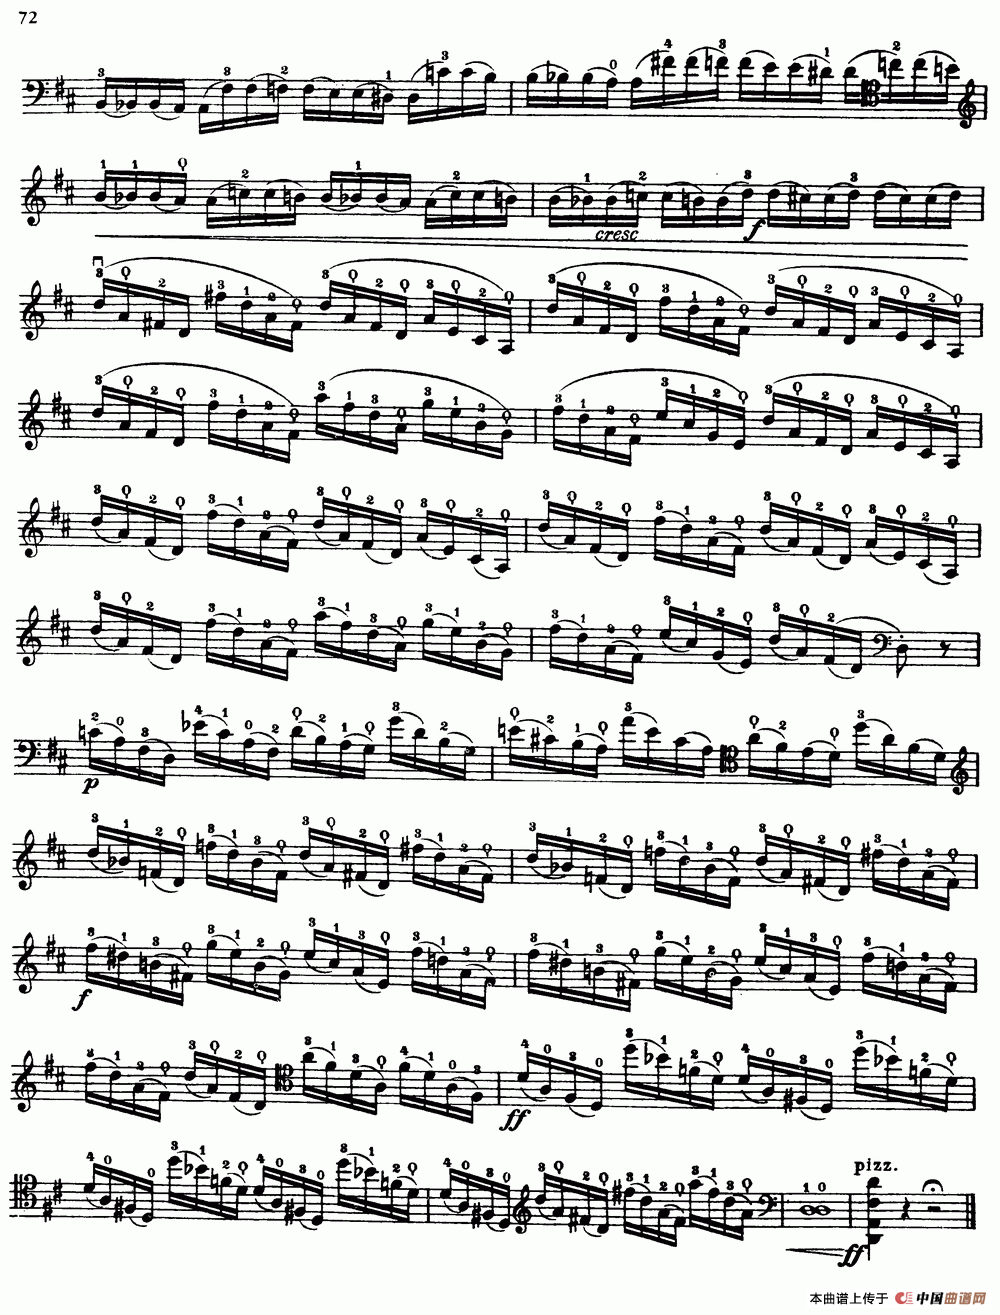 大提琴高级练习曲40首 No.33